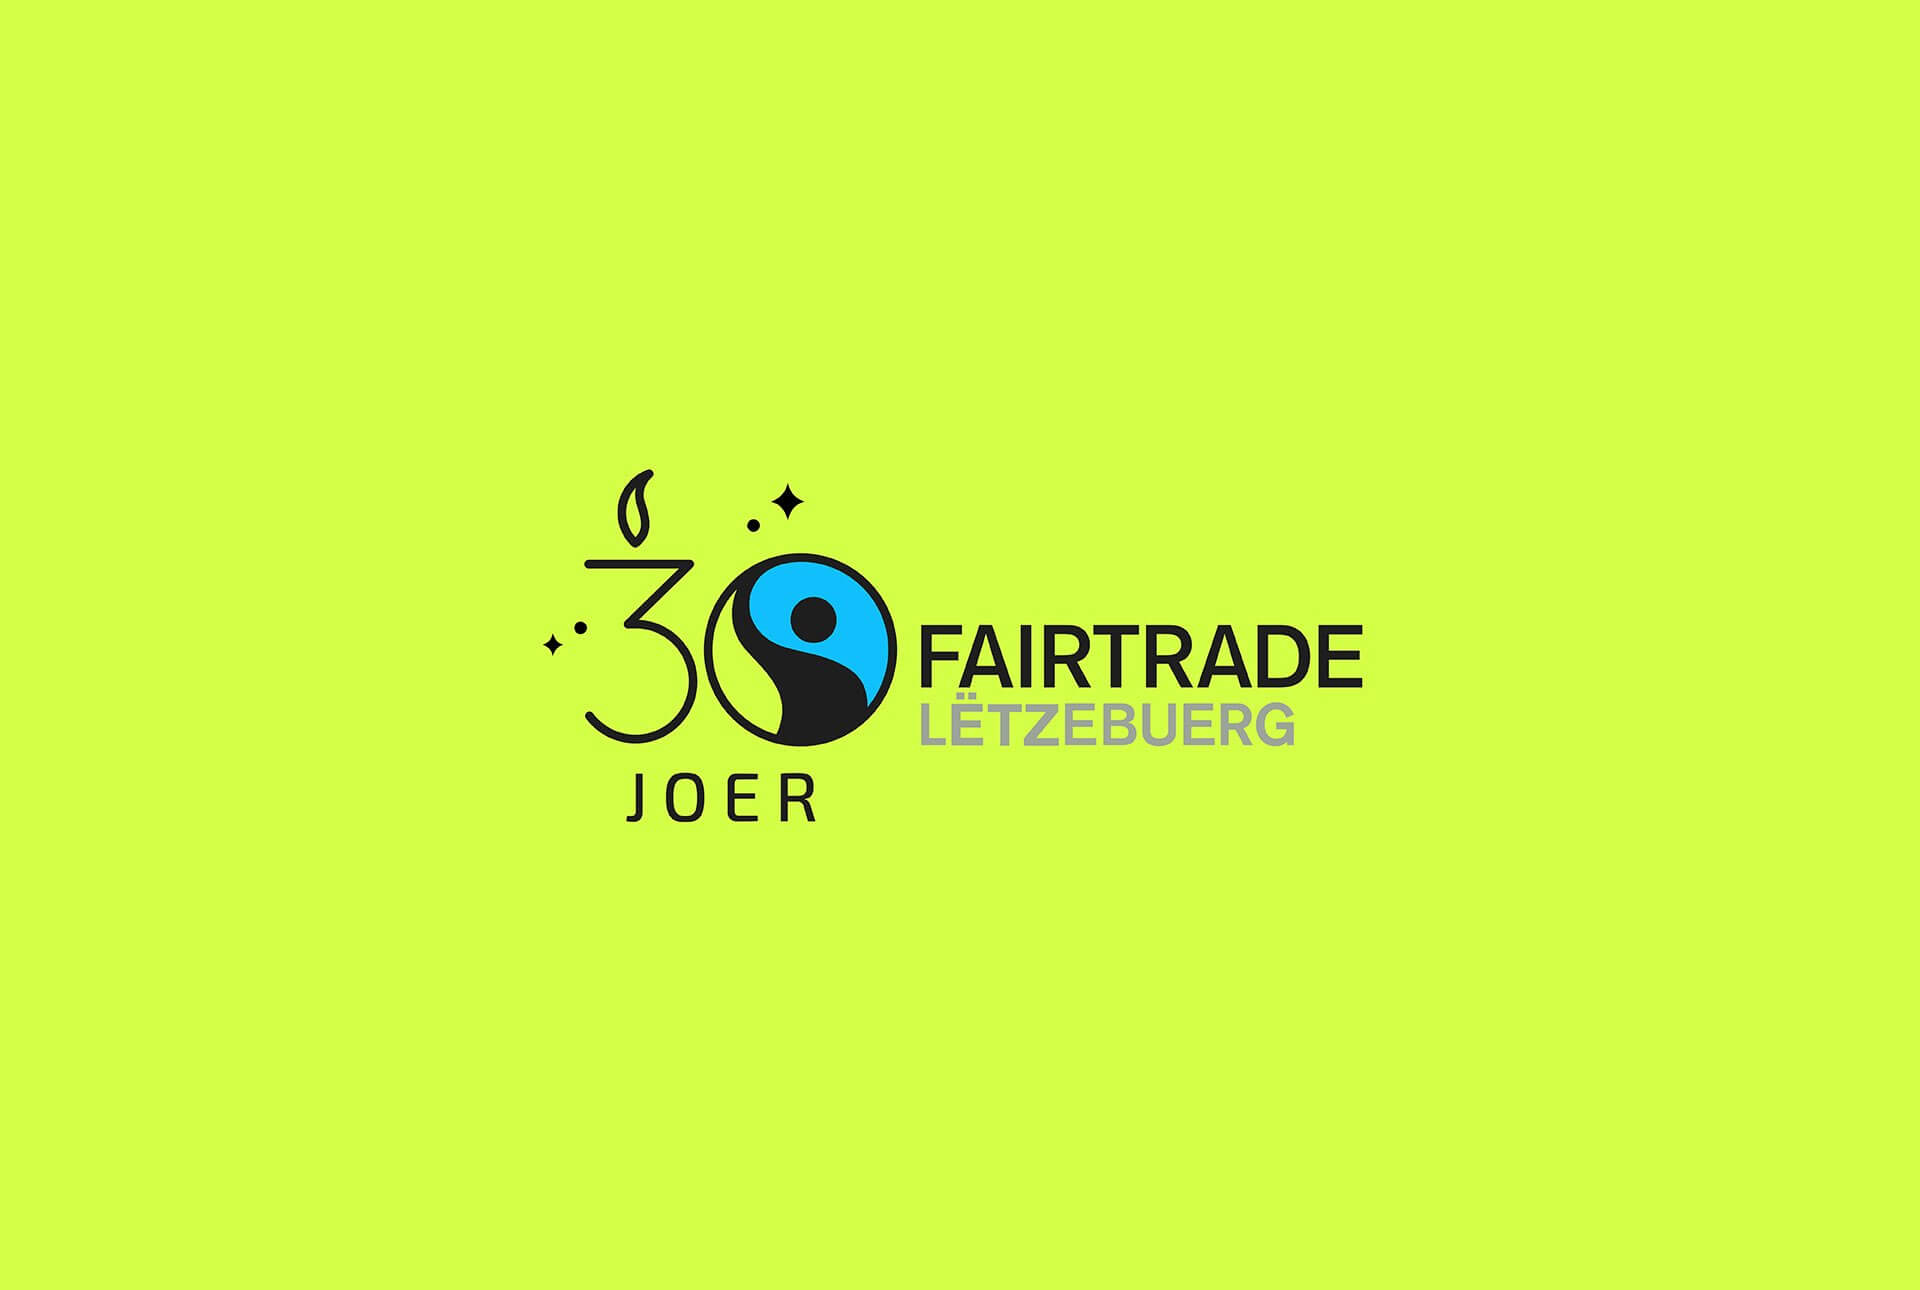 Le logo Fairtrade décliné pour les 30 ans de l'association au Luxembourg